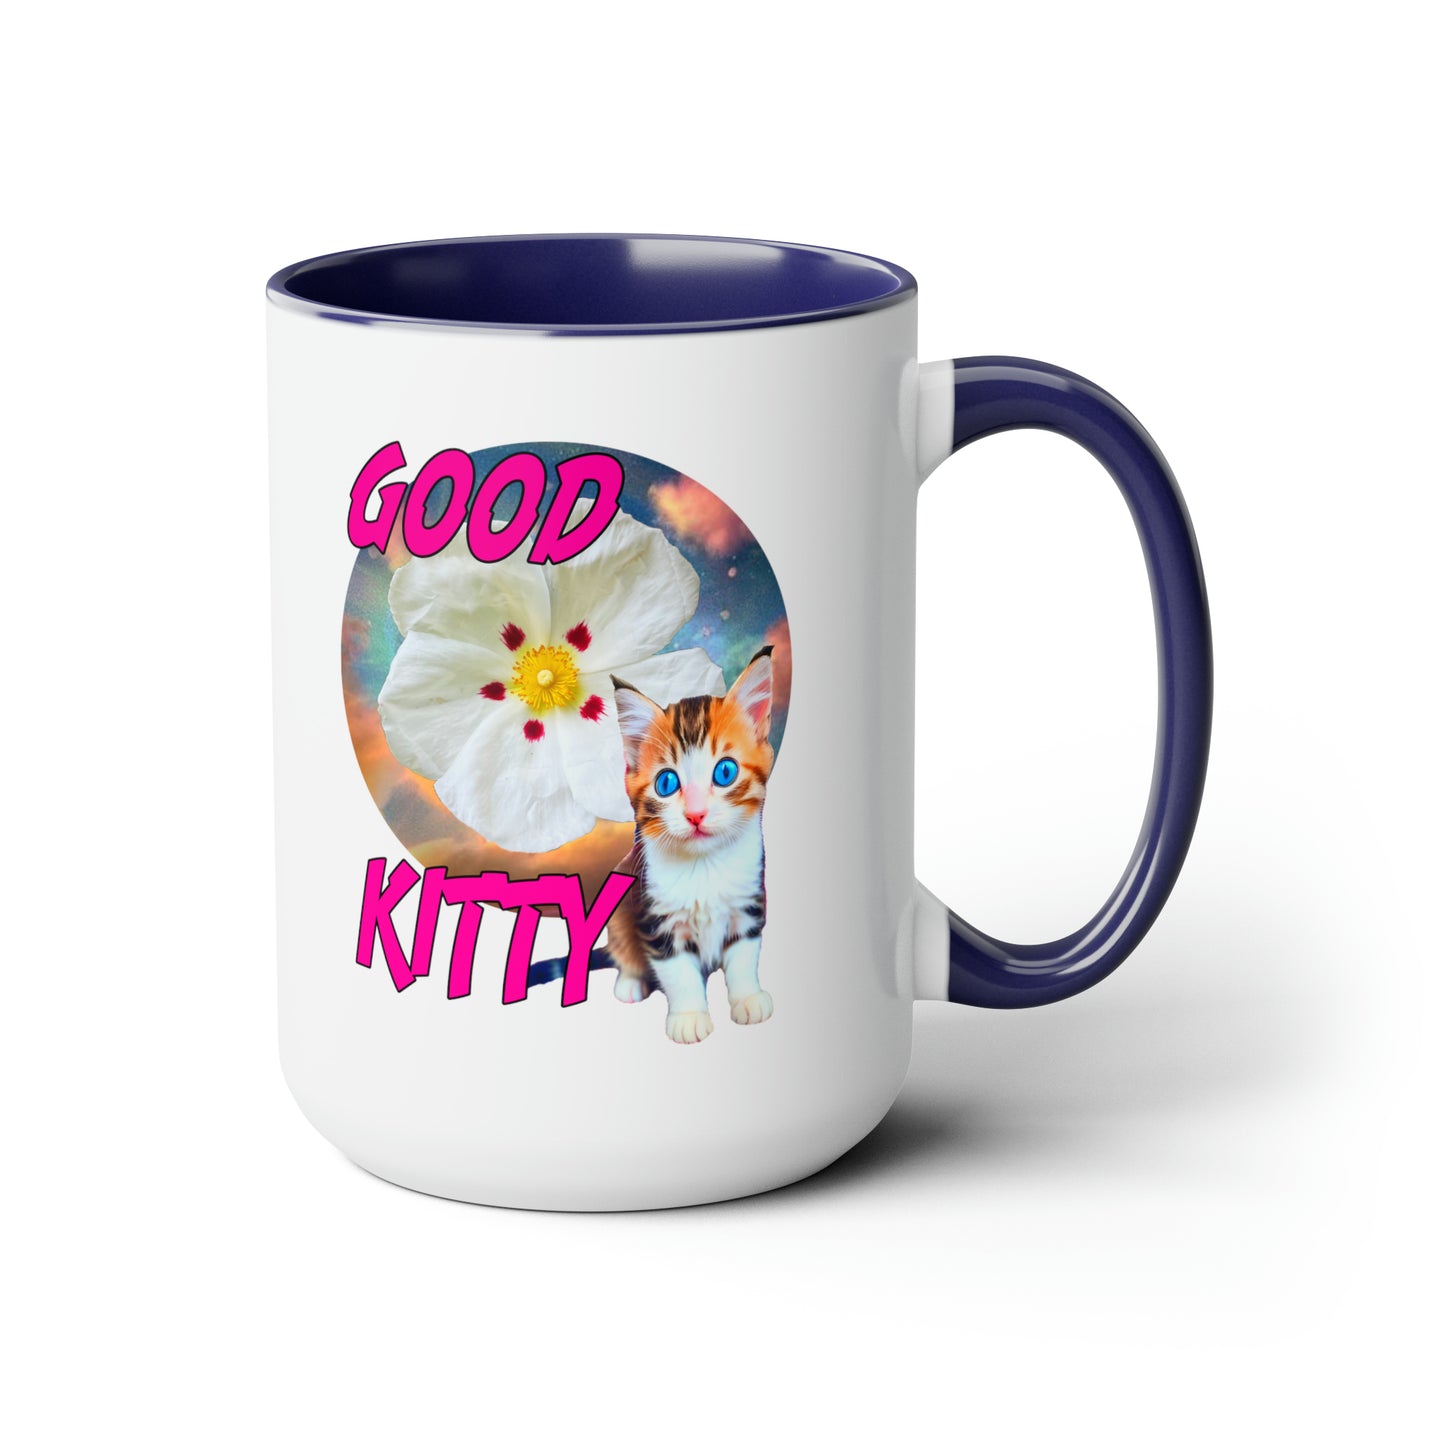 GOOD KITTY Mug, 15oz